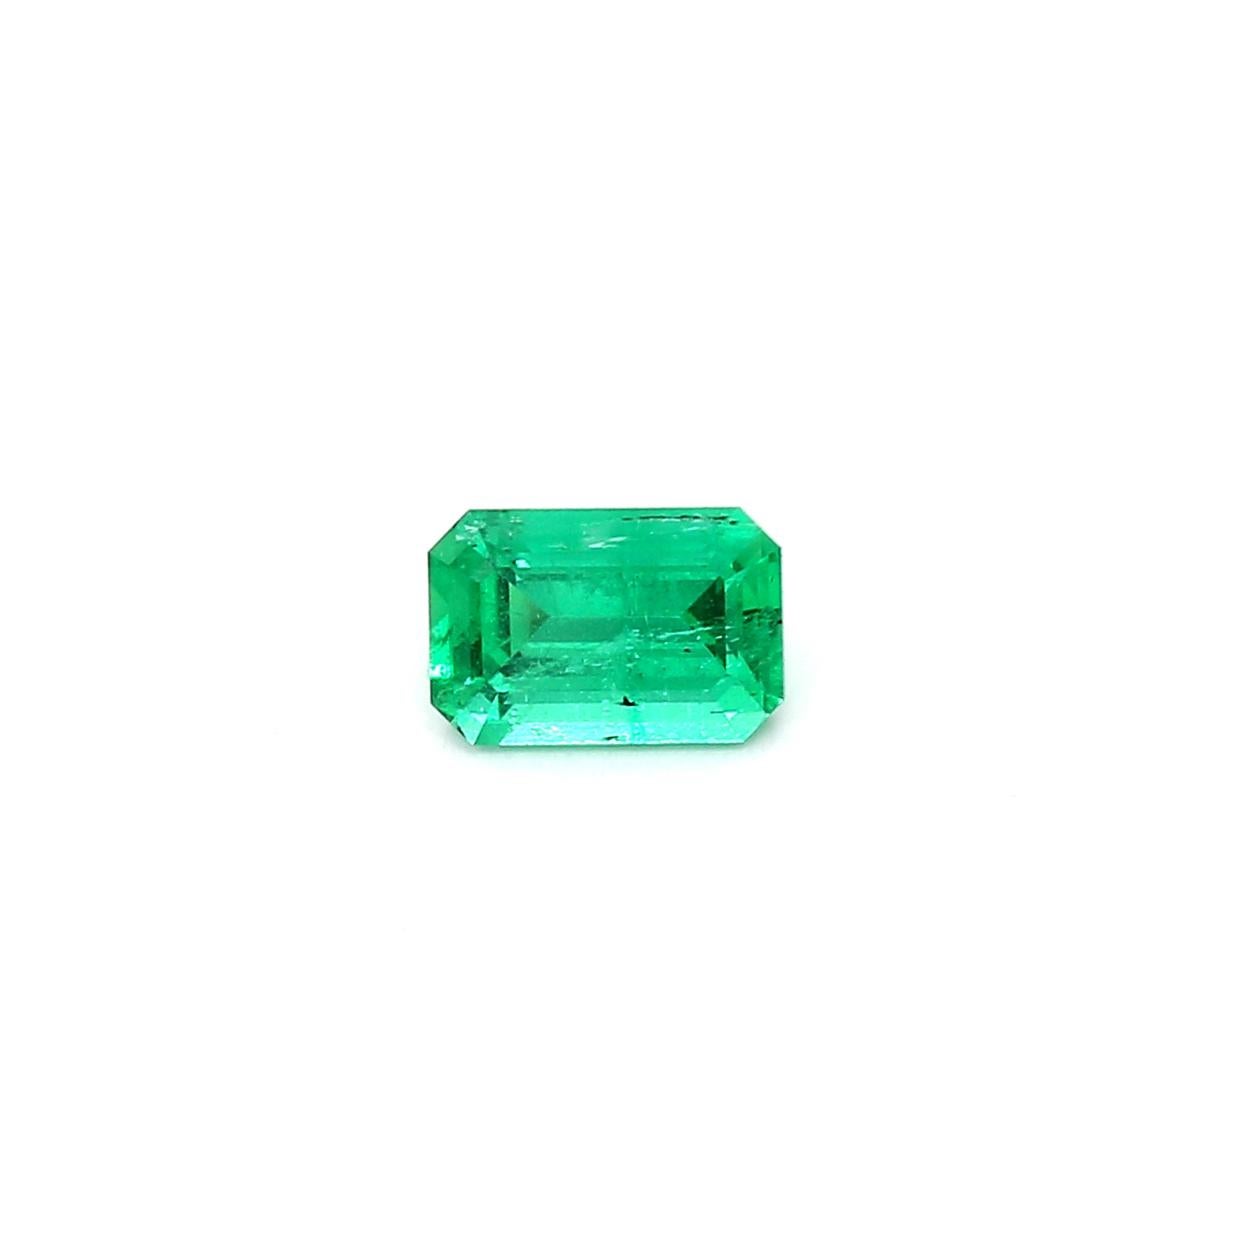 Modern Intense Green Emerald Cut Emerald Ring Gem 0.54 Carat Weight For Sale